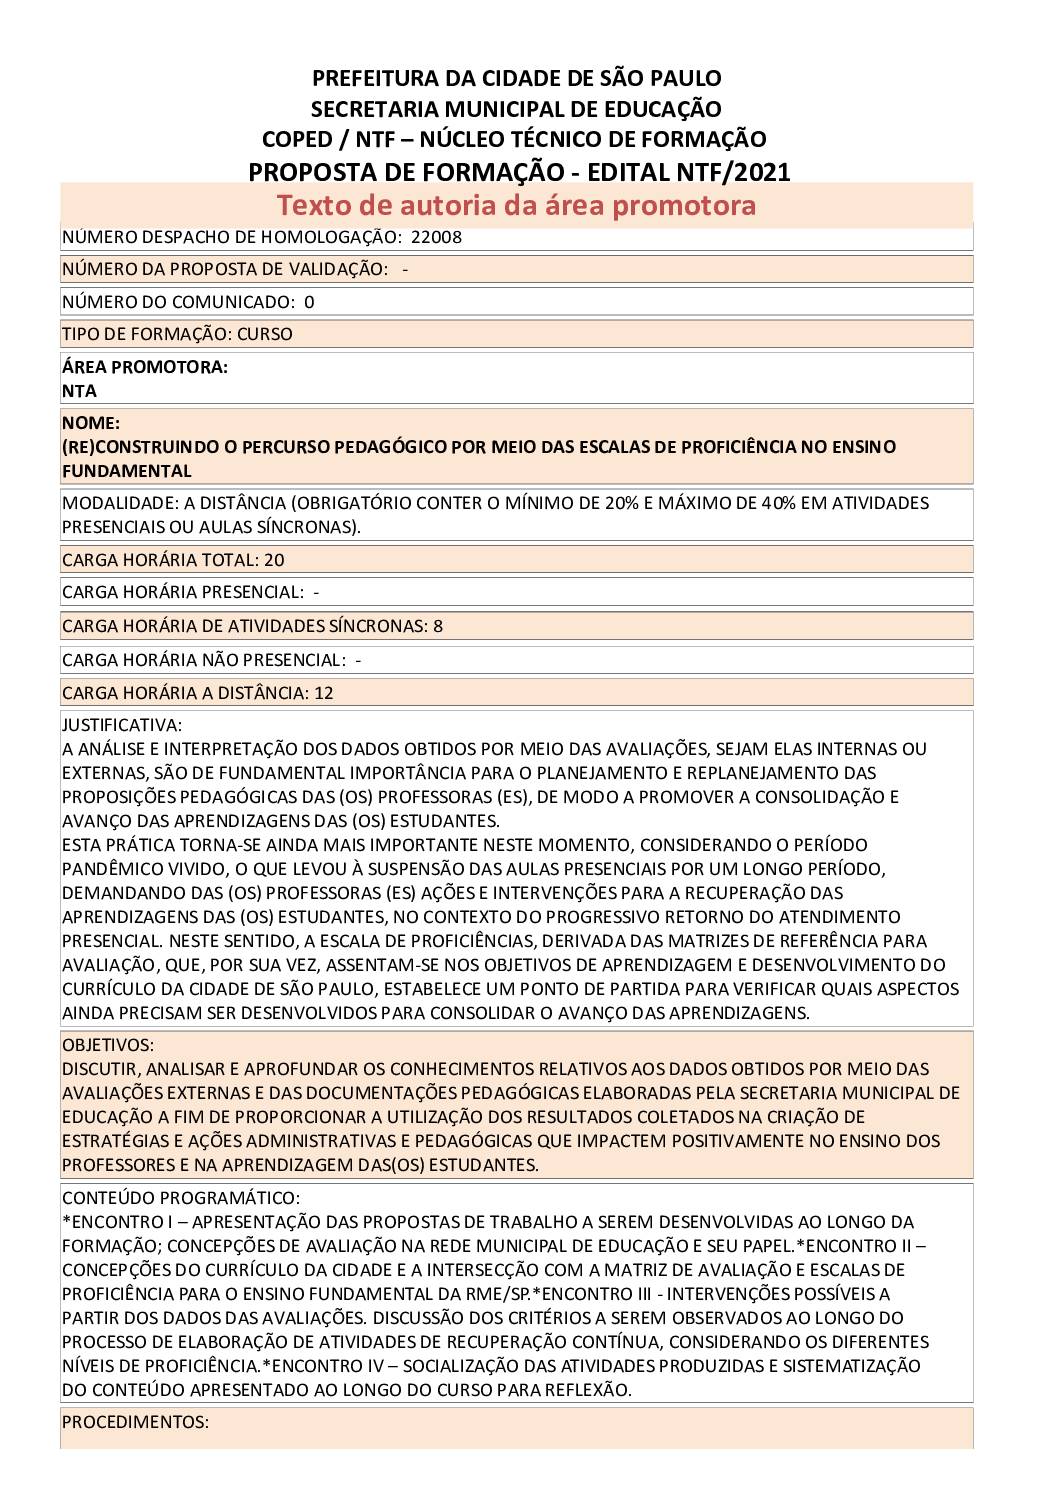 PDF com informações do curso: (RE)CONSTRUINDO O PERCURSO PEDAGÓGICO POR MEIO DAS ESCALAS DE PROFICIÊNCIA NO ENSINO FUNDAMENTAL